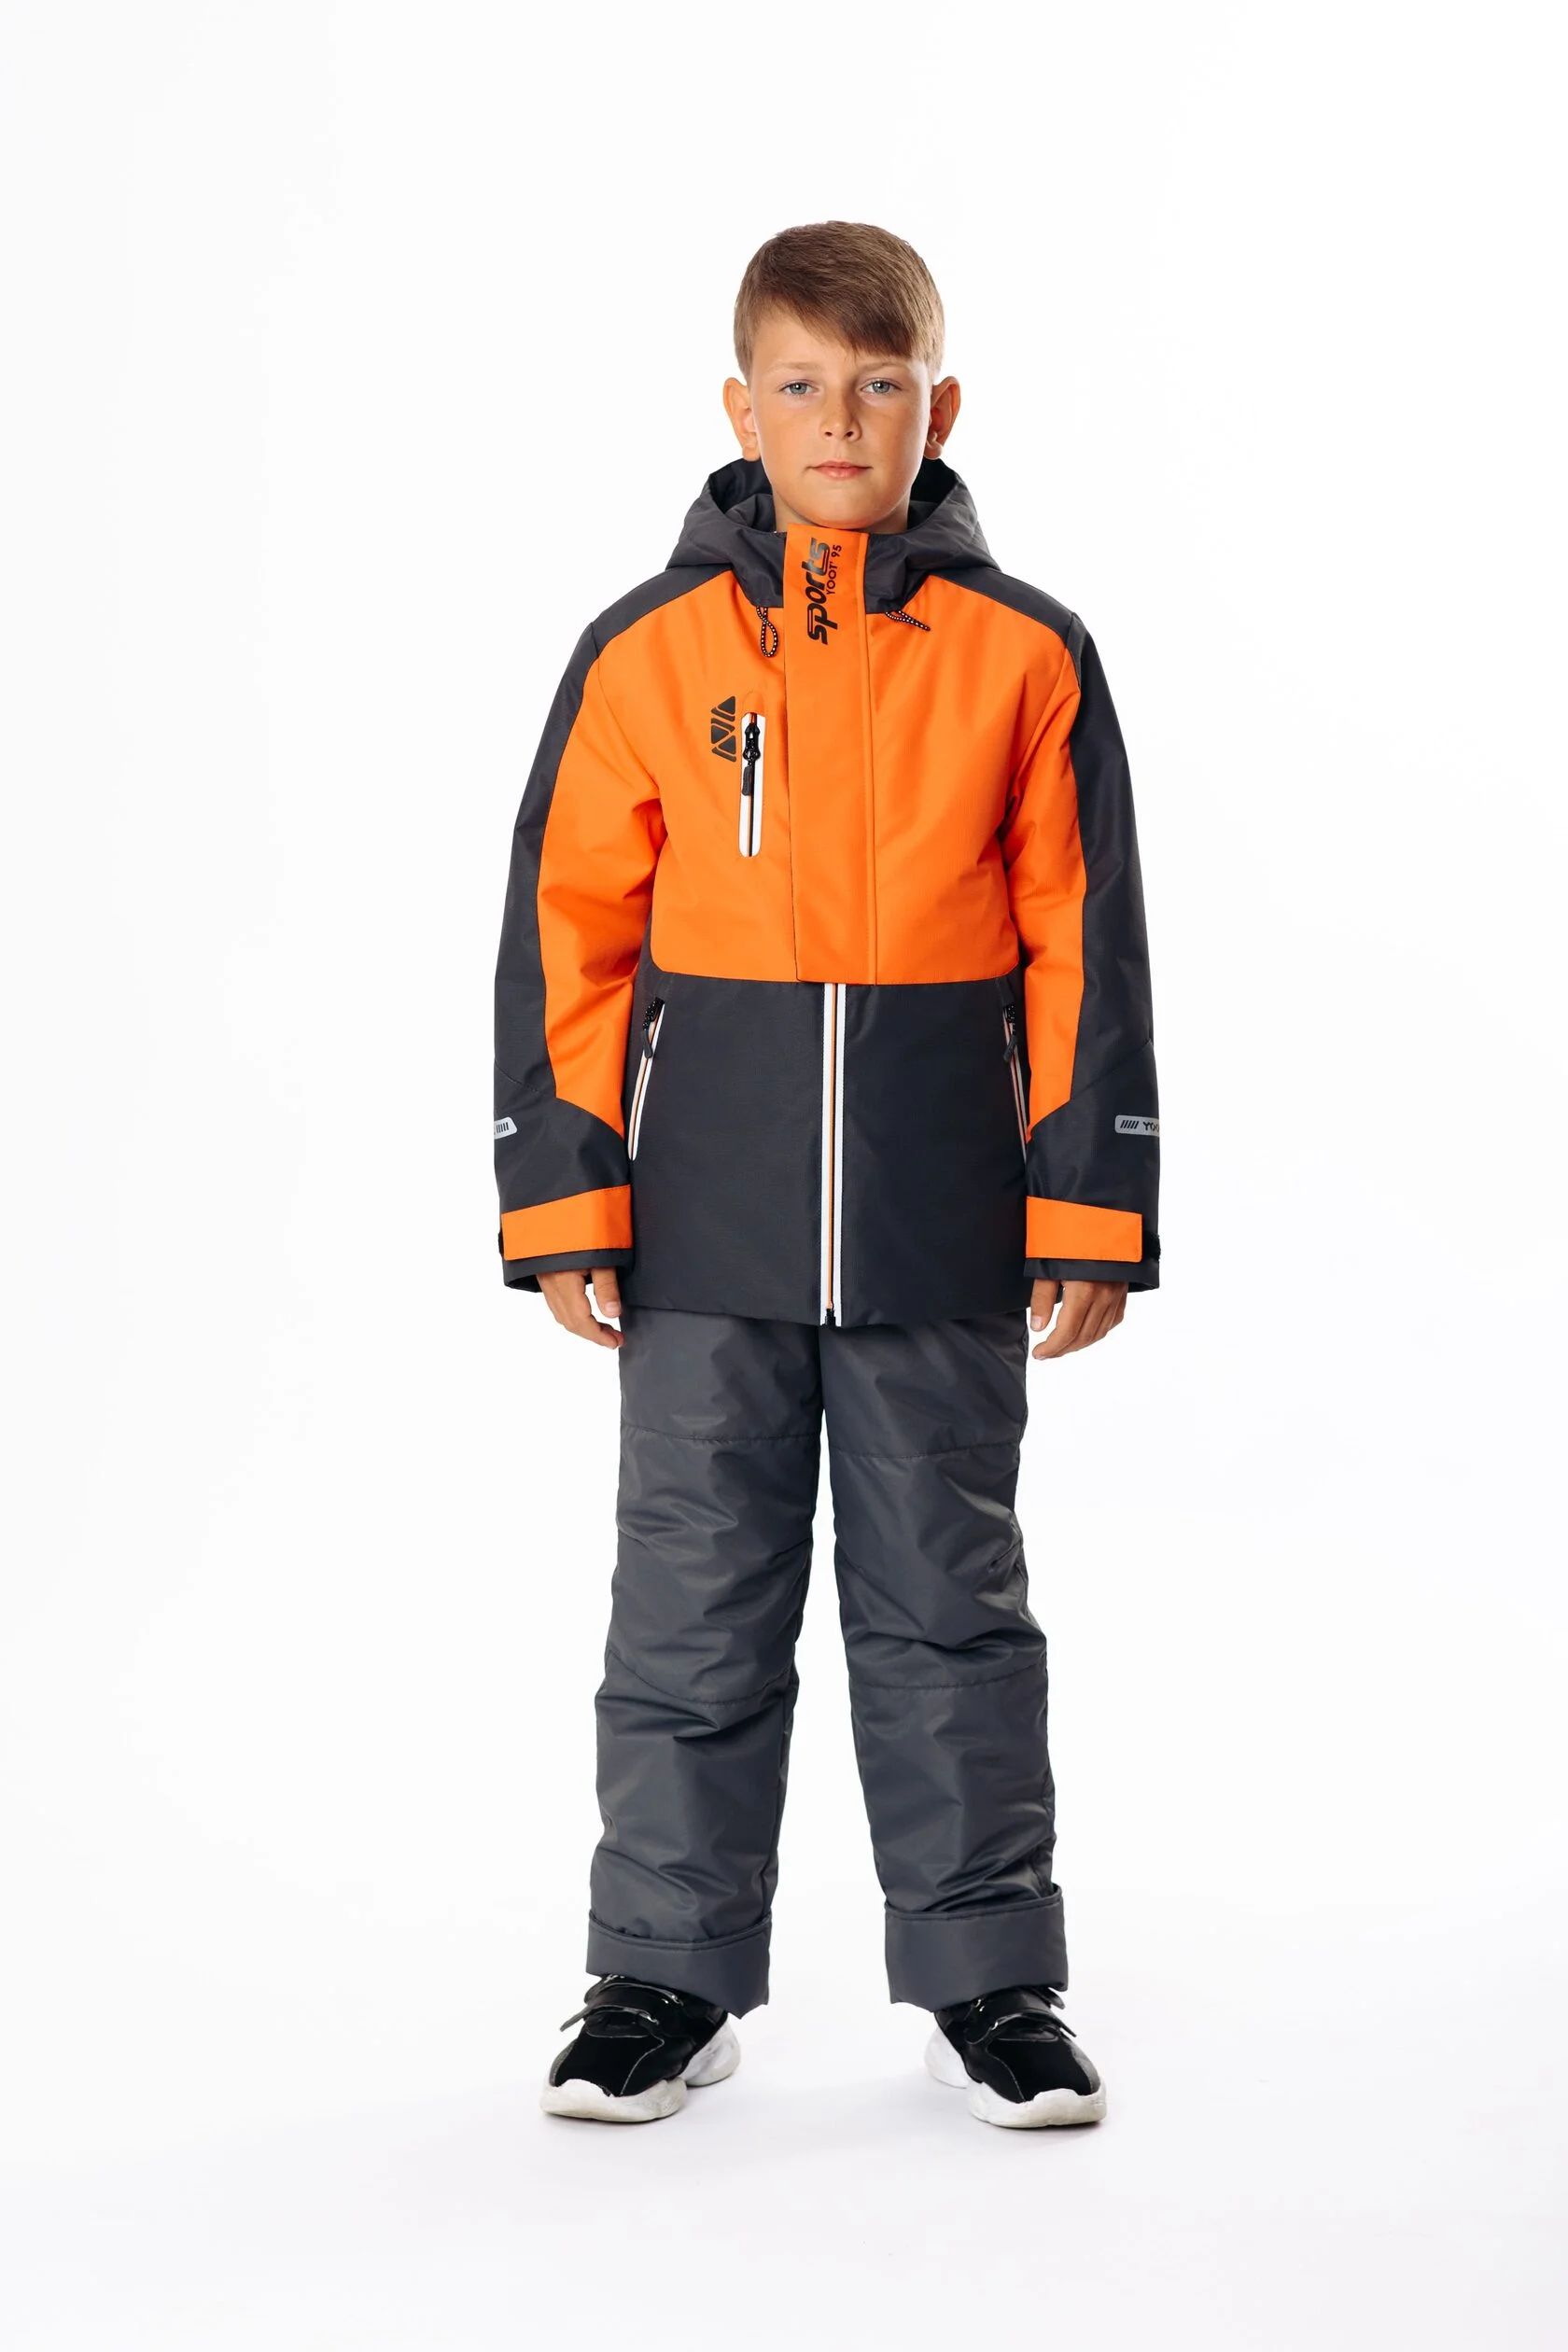 Комплект верхней одежды Yoot 2505 оранжевый, 116 комплект верхней одежды yoot 2505 оранжевый 116